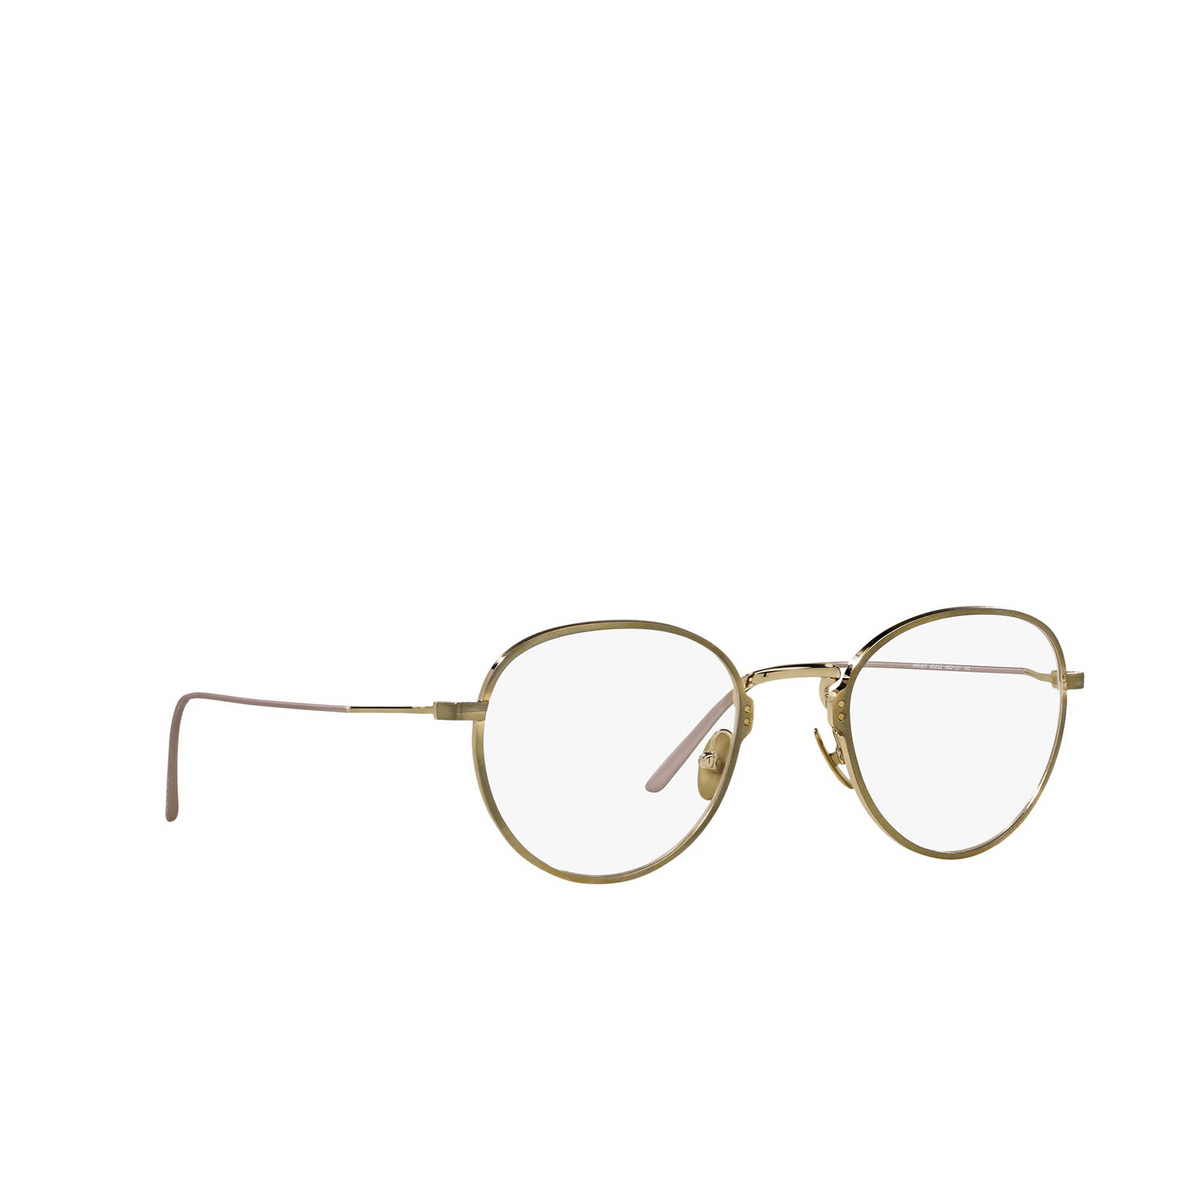 Prada® Oval Eyeglasses: PR 50YV color Satin Pale Gold 06Q1O1 - three-quarters view.